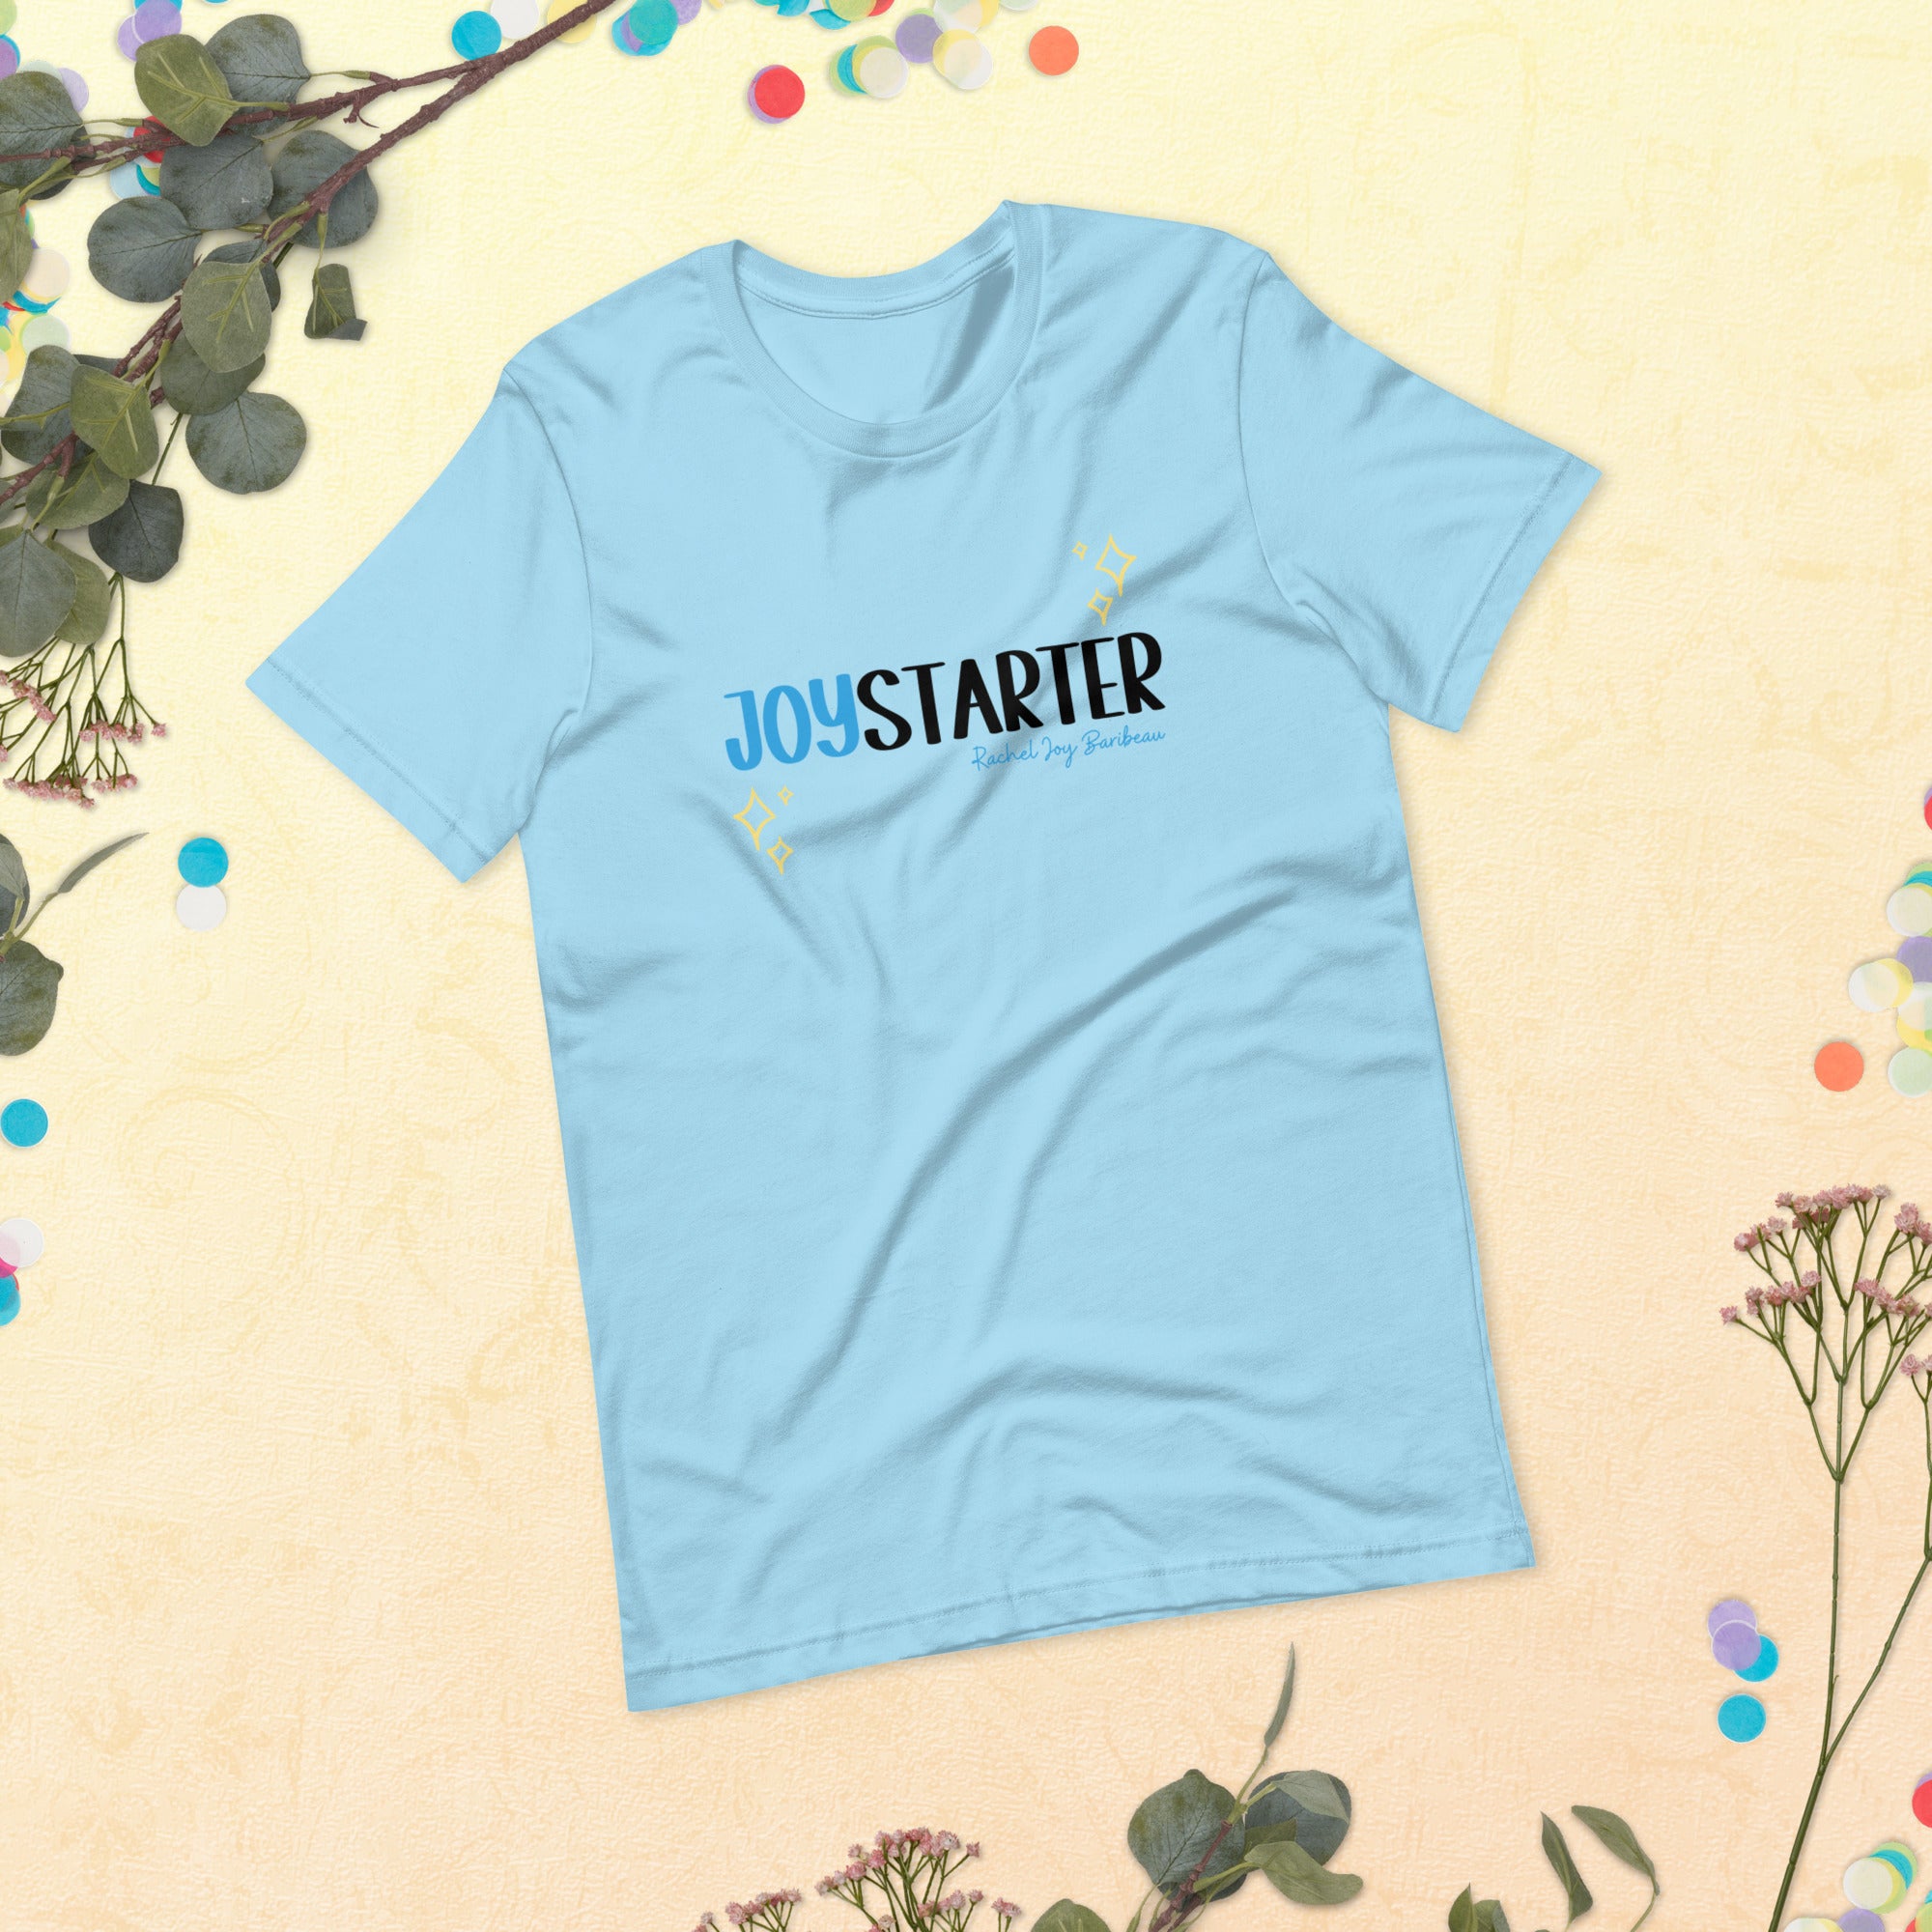 Be a Joy Starter - Unisex t-shirt